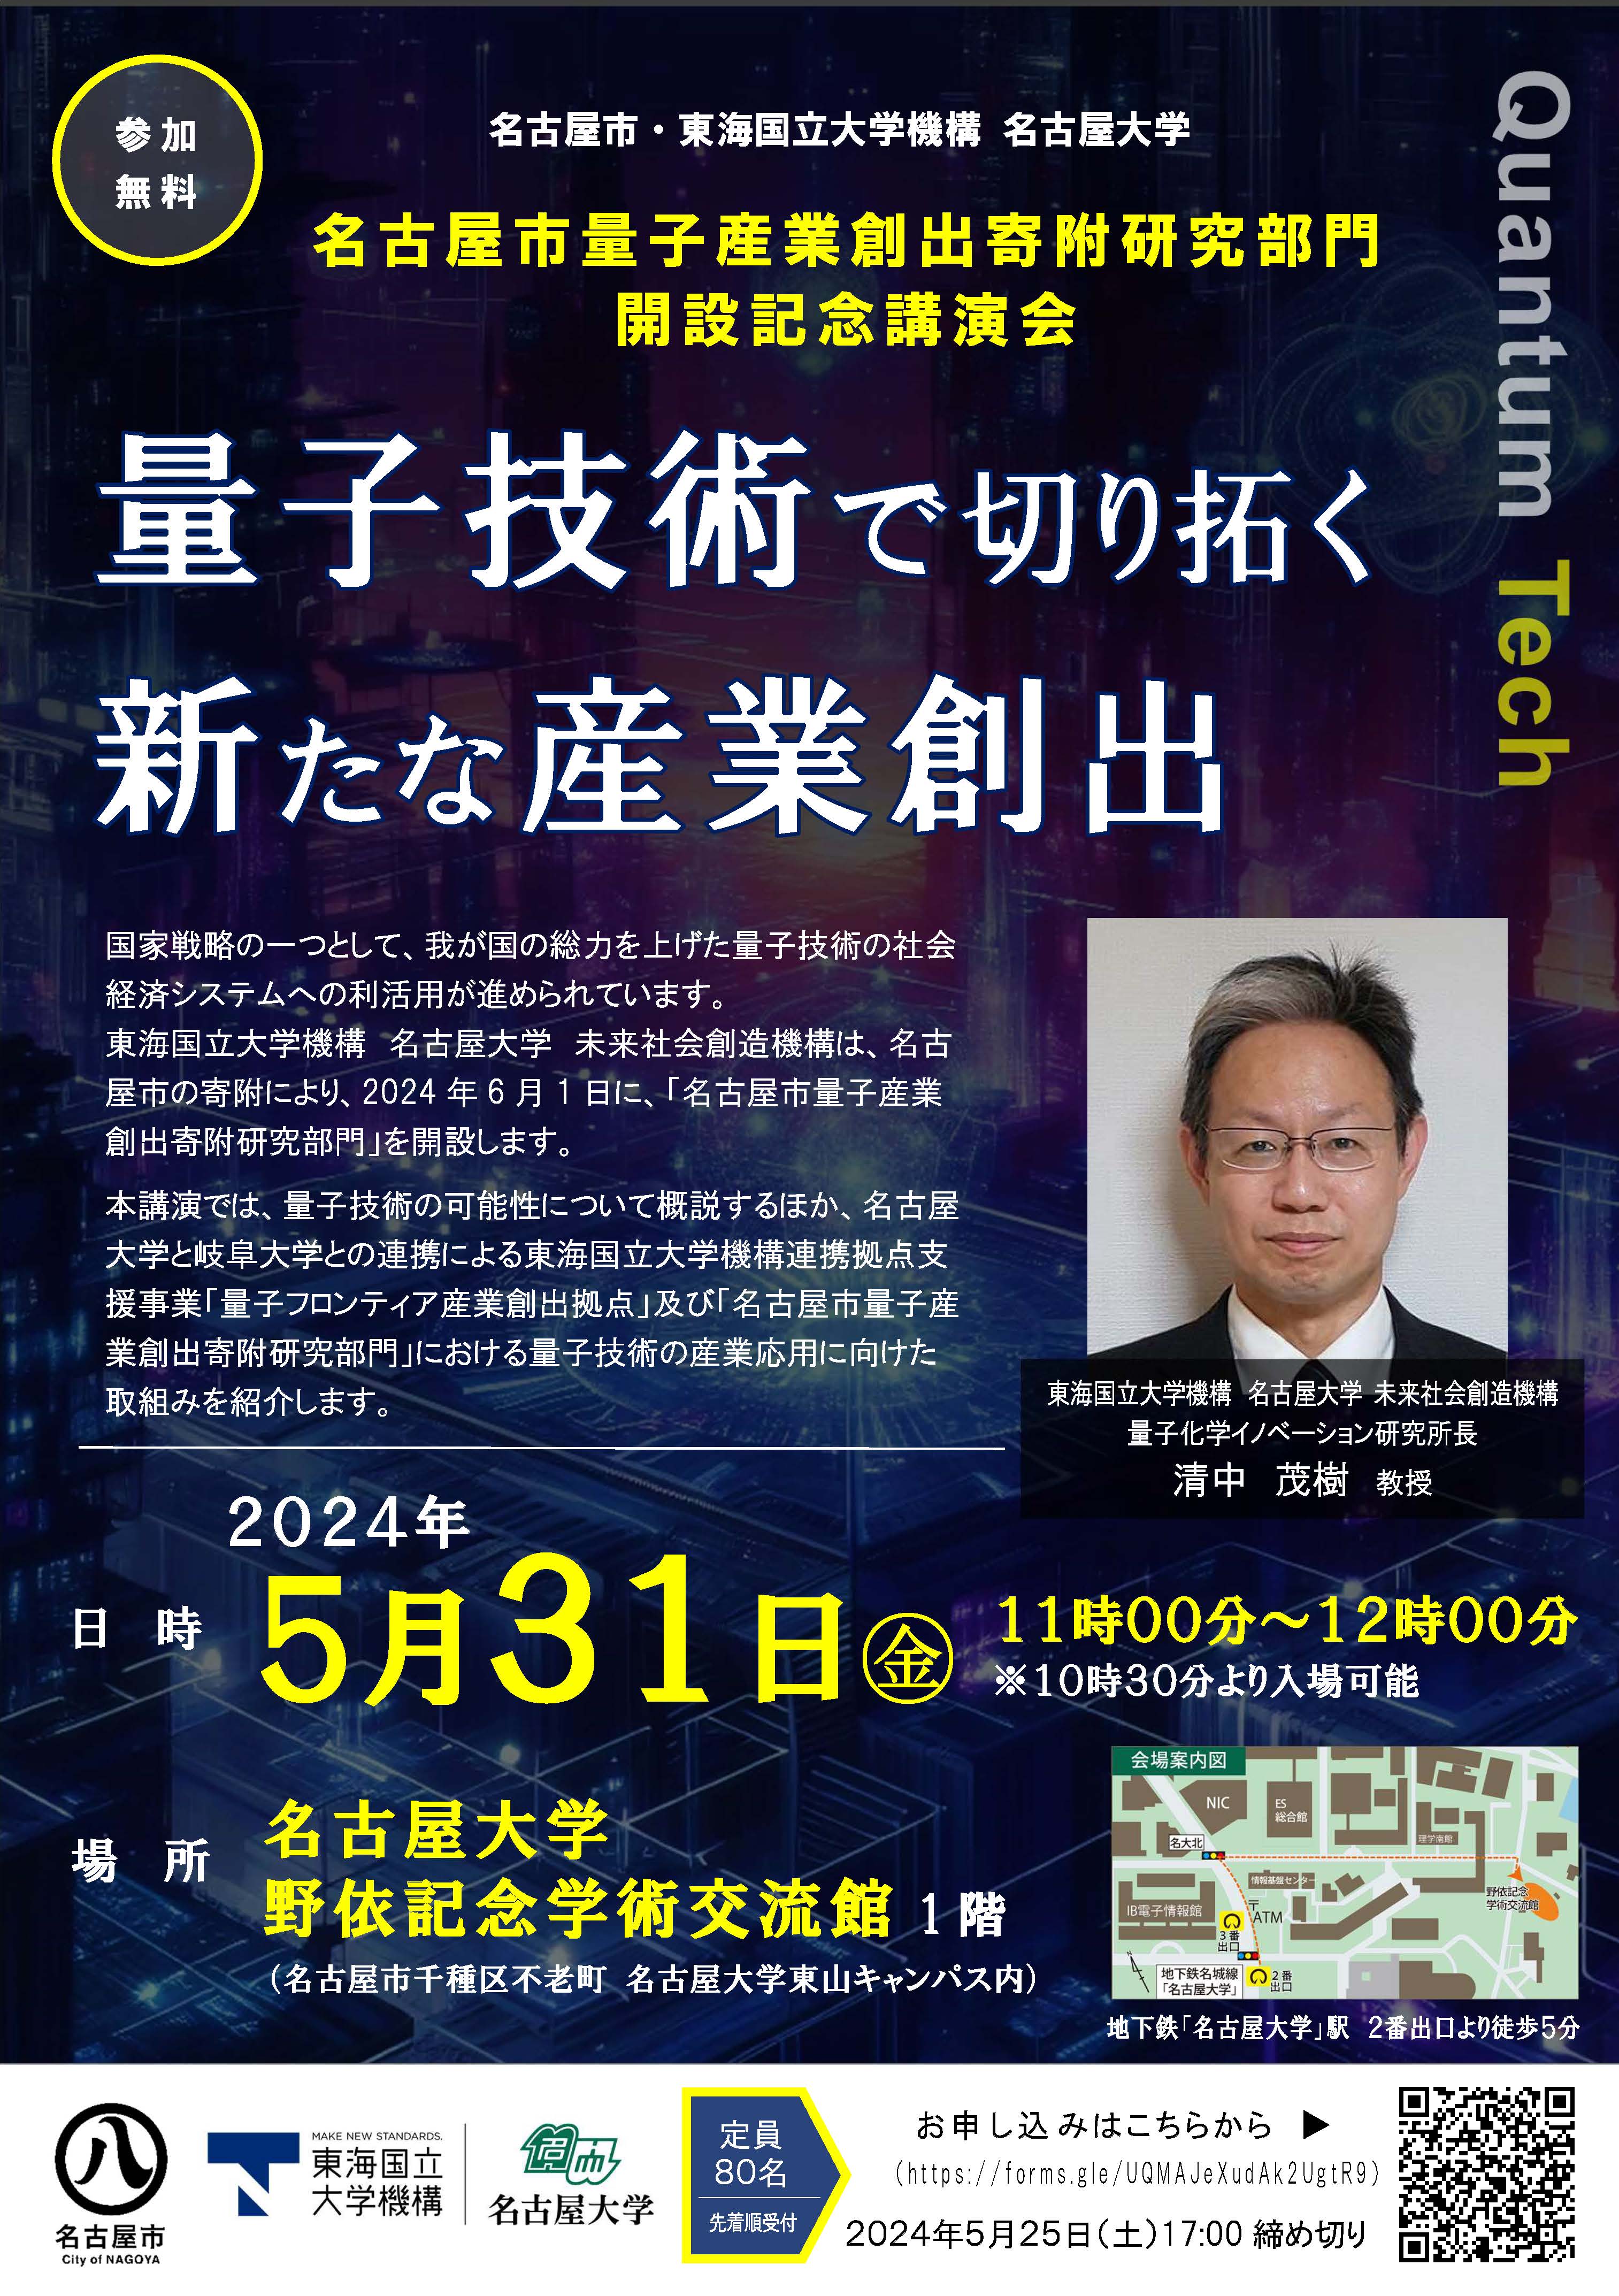 名古屋市量子産業創出寄附研究部門 開設記念講演会「量子技術で切り拓く新たな産業創出」